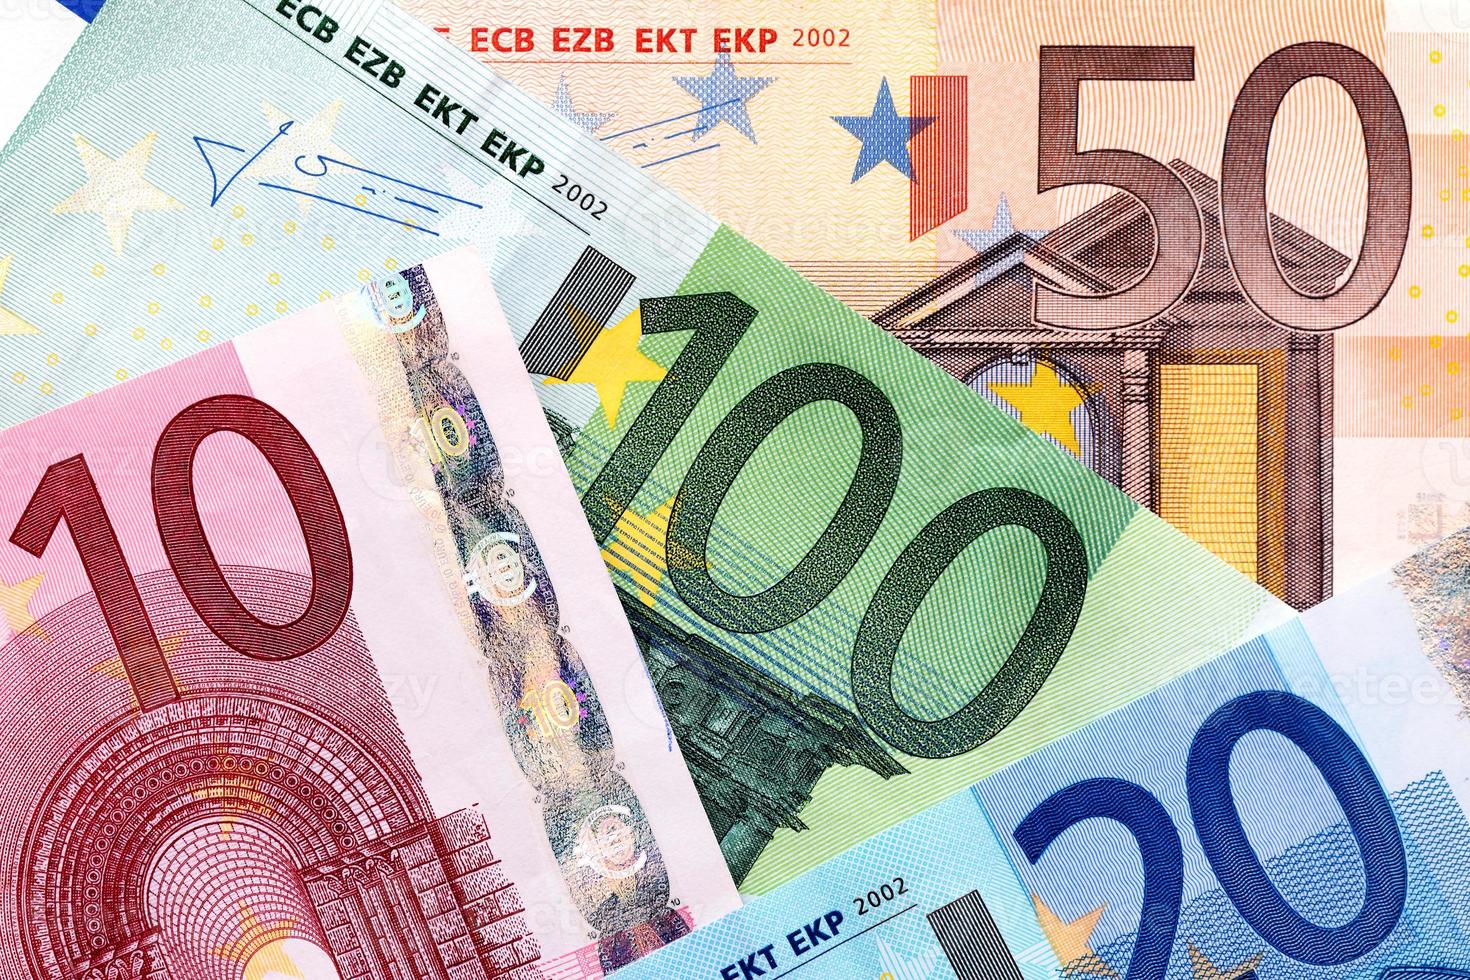 monnaie euro photo